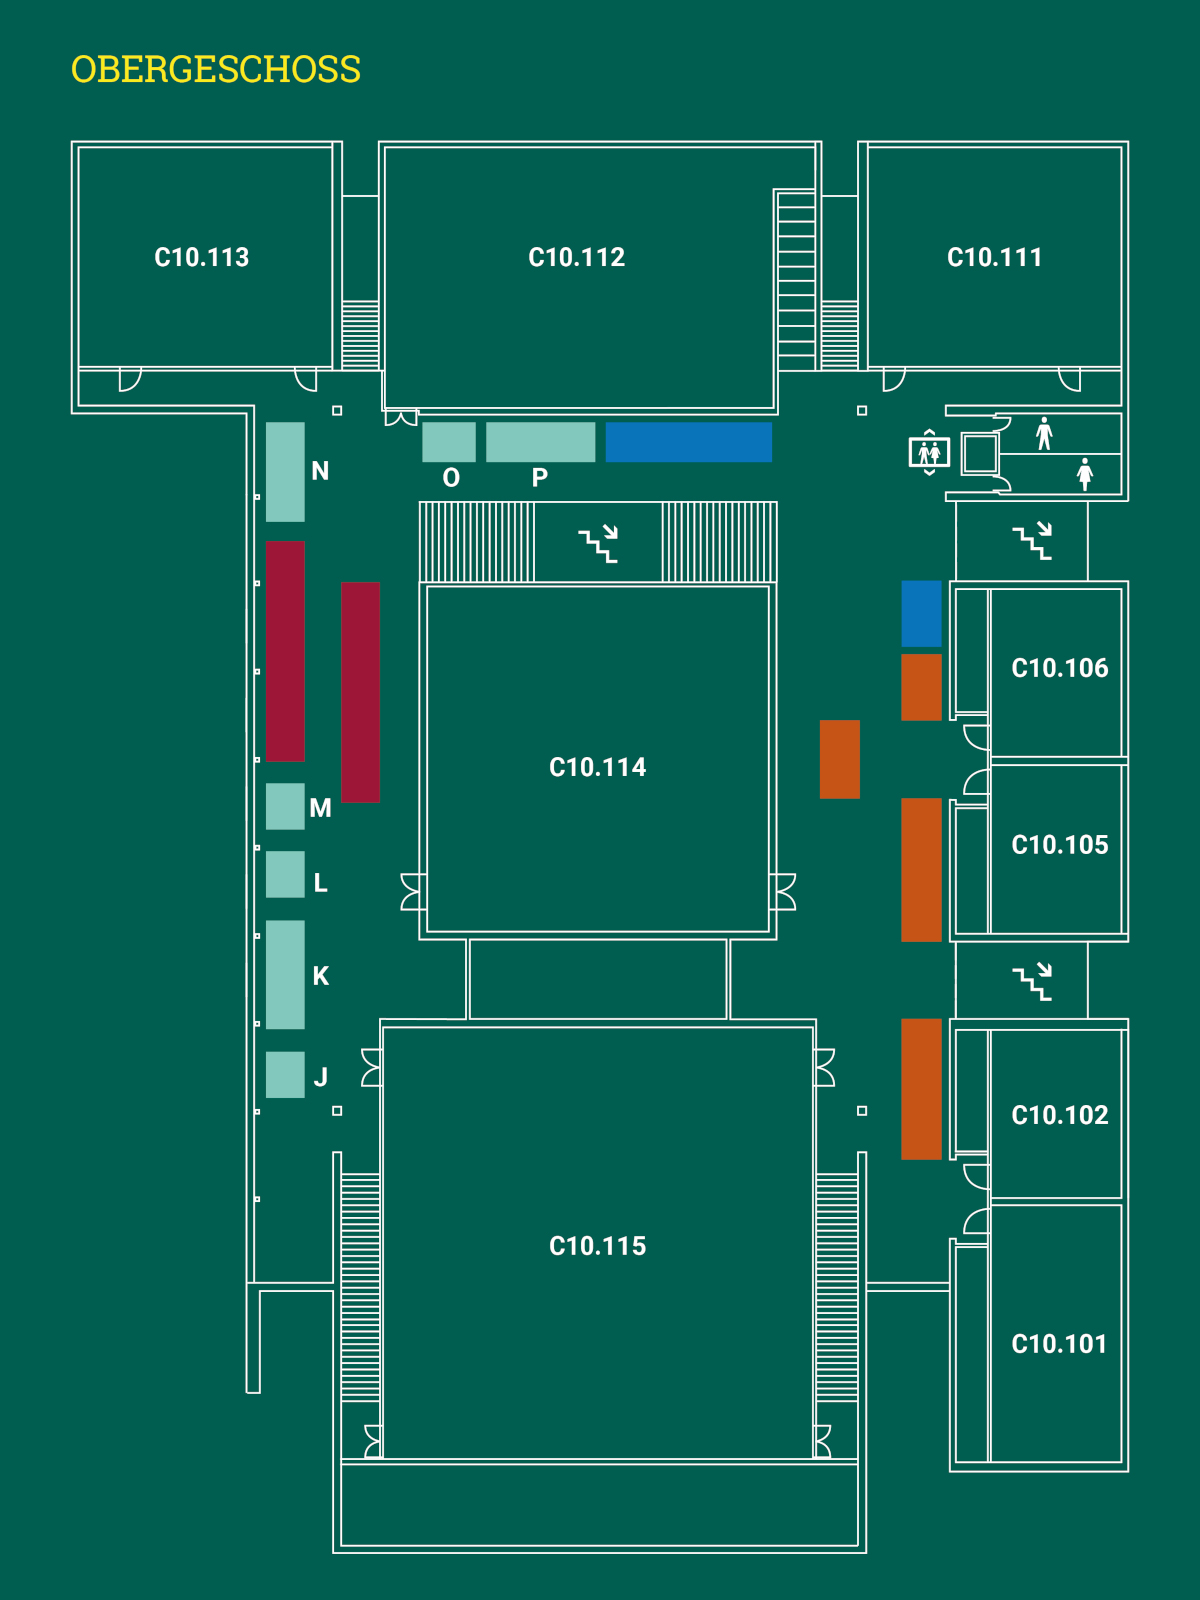 Eine 2D-Karte des Obergeschoss des Veranstaltungsgebäude zum Tag der offenen Tür in der Reichenhainer Straße 90 mit Lage der Vortragsräume C10.101 bis C10.115